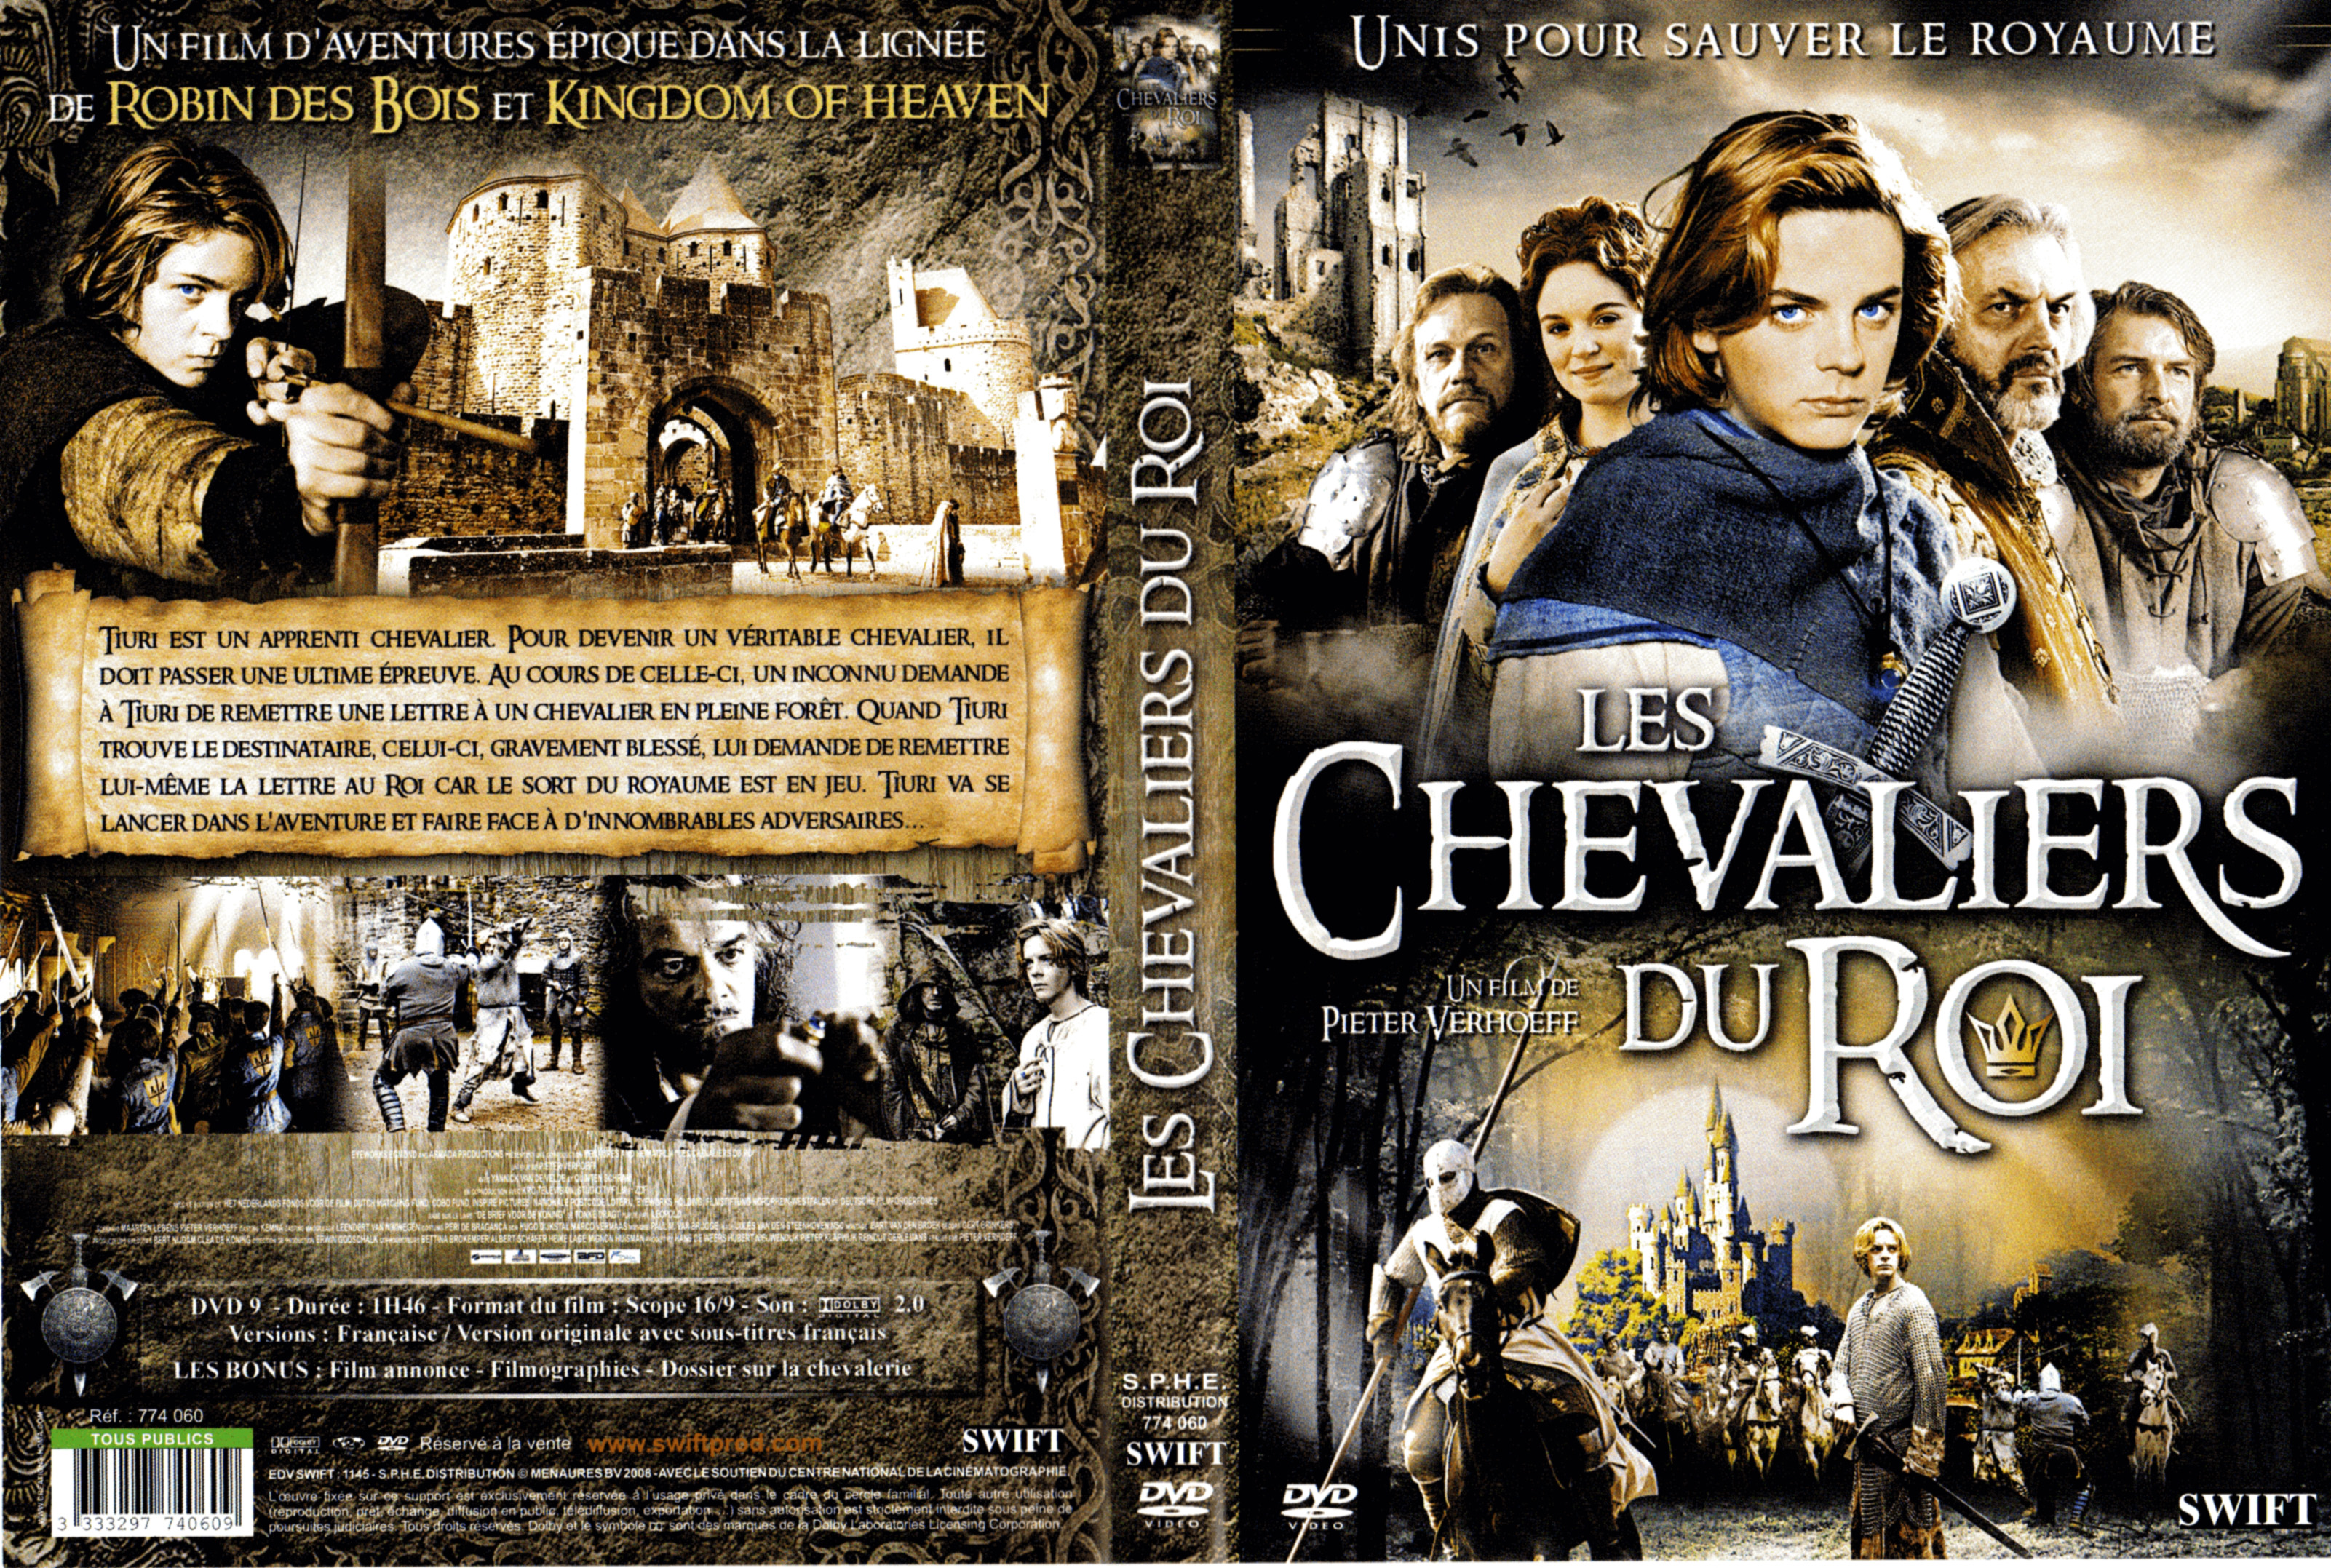 Jaquette DVD Les chevaliers du roi